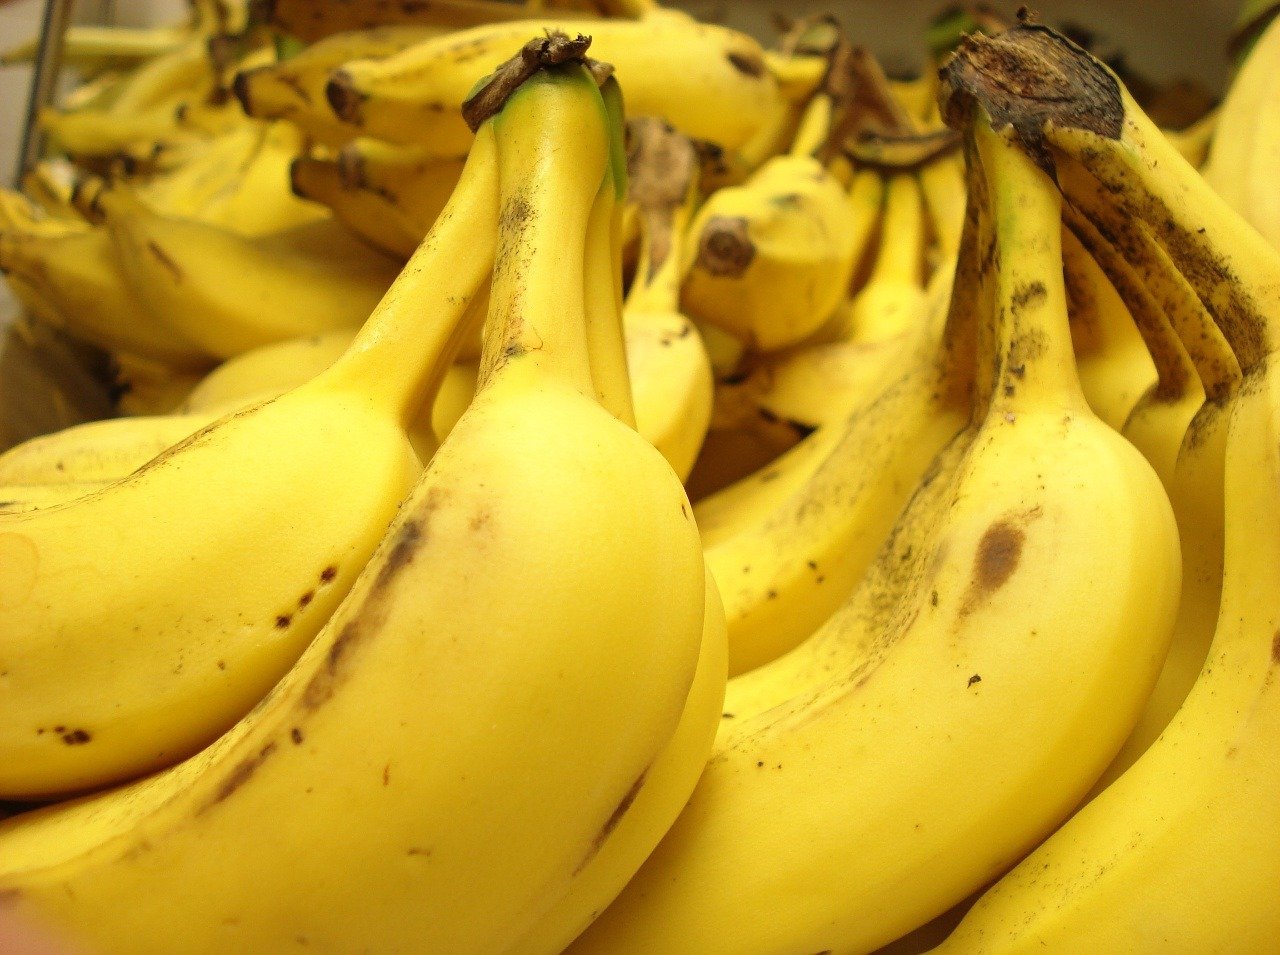 Obľúbené banány možno čoskoro zmiznú z predajní.